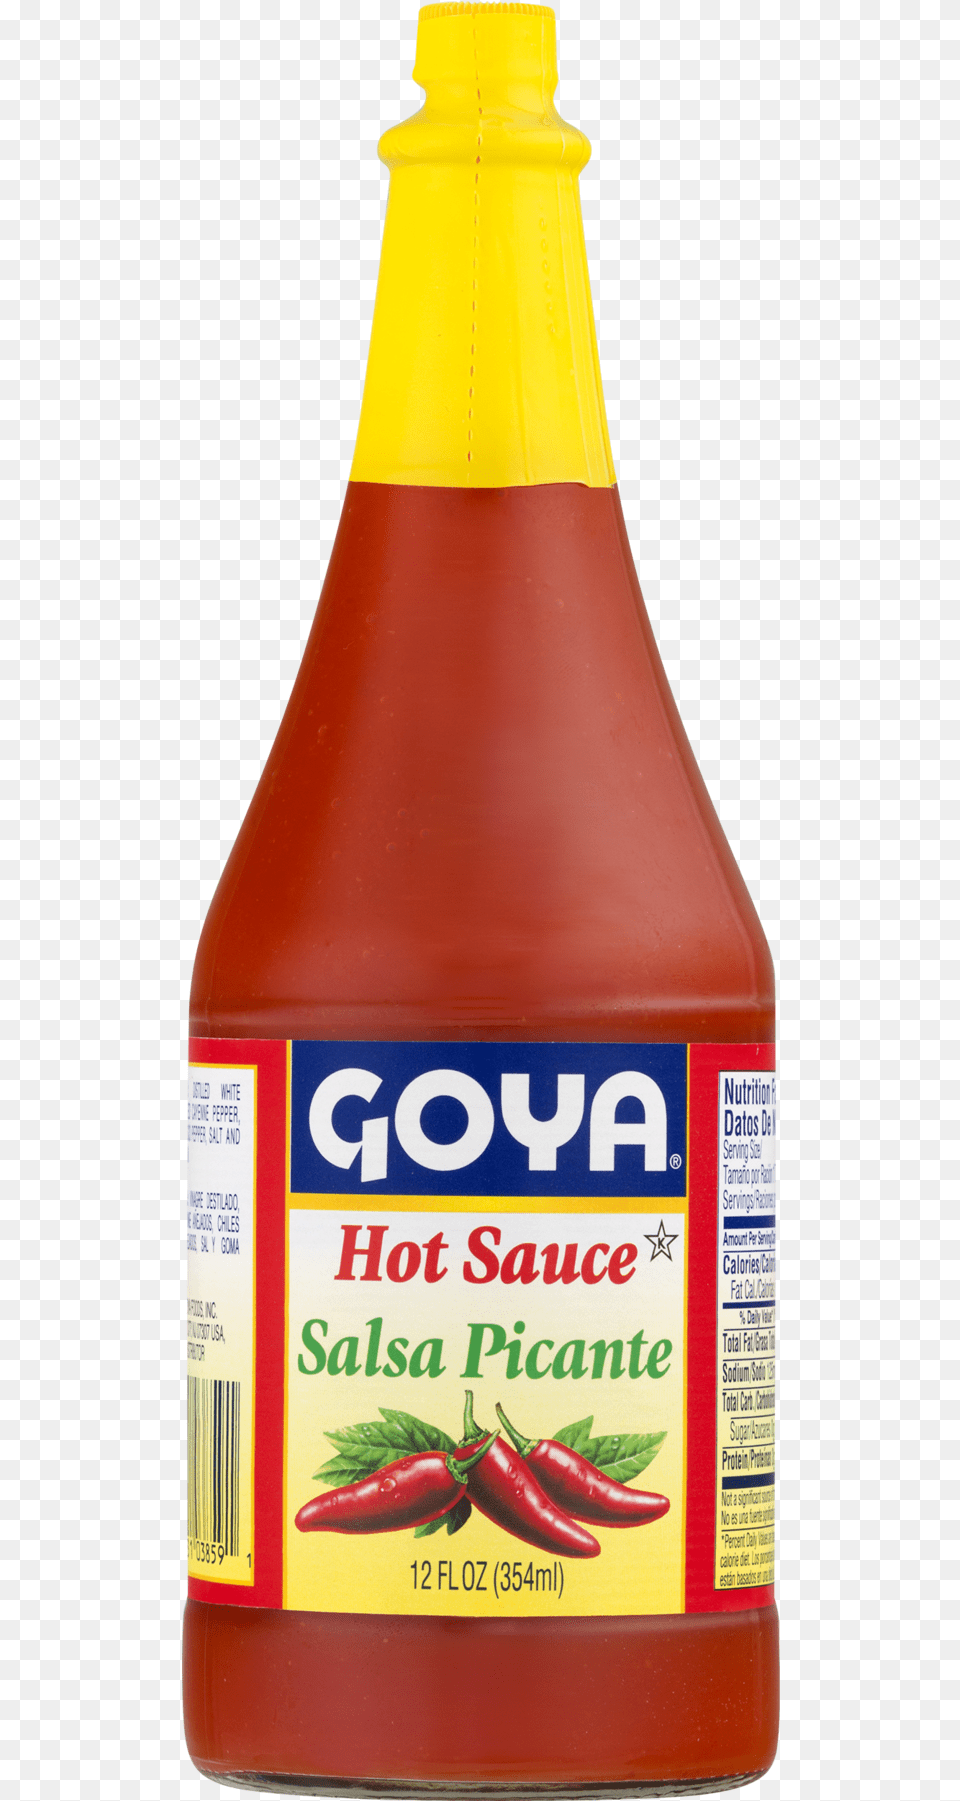 Goya Hot Sauce Salsa Picante, Food, Ketchup Png Image